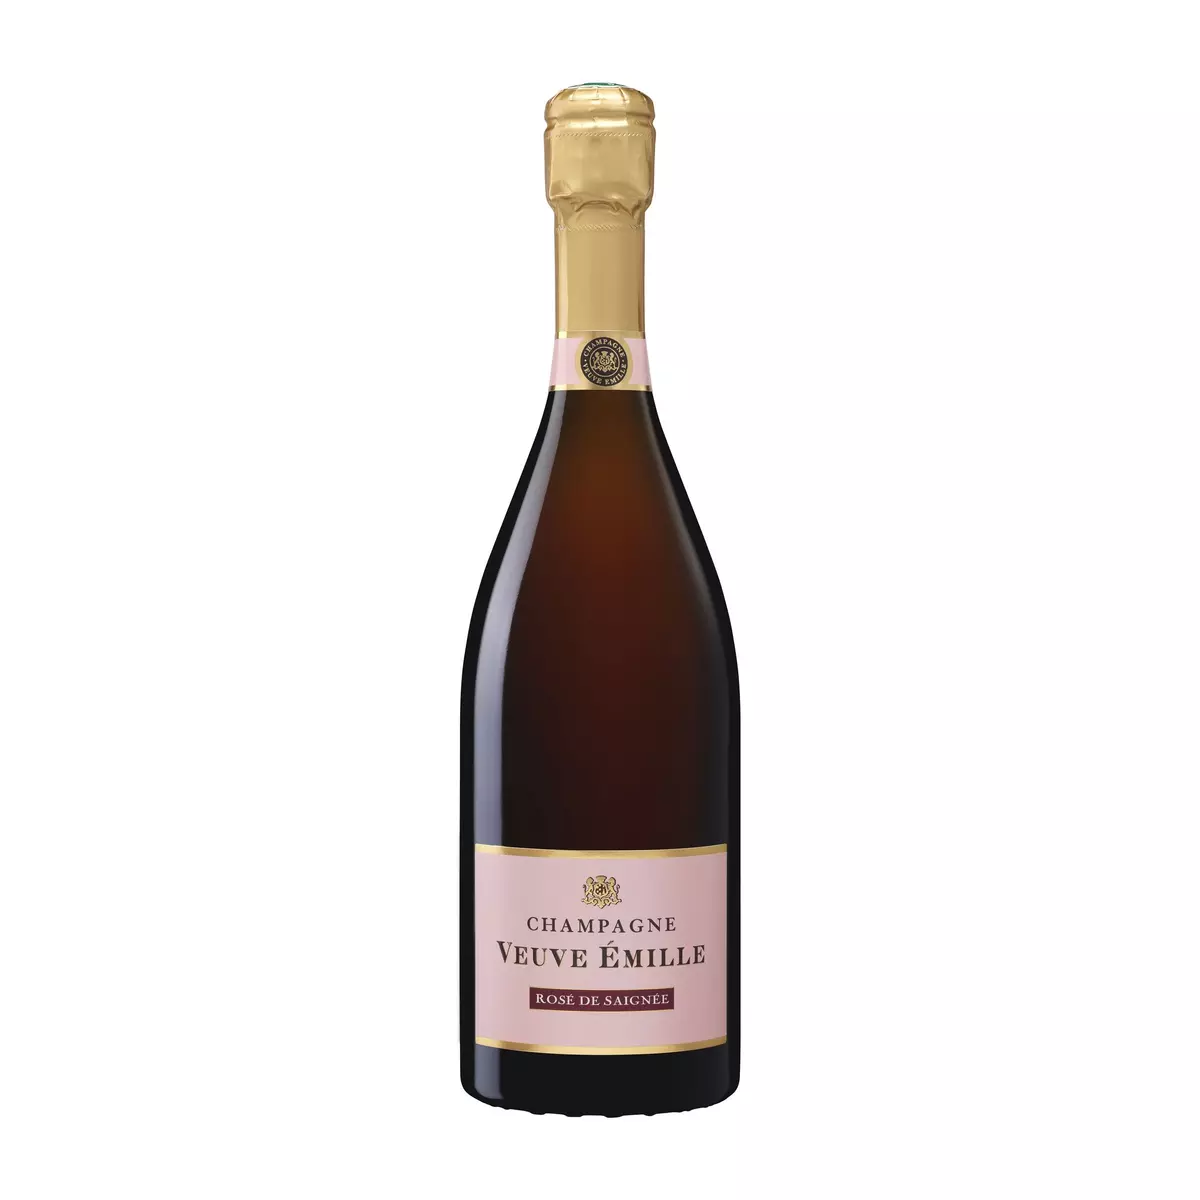 VEUVE EMILLE AOP Champagne Rosé de Saignée brut 75cl